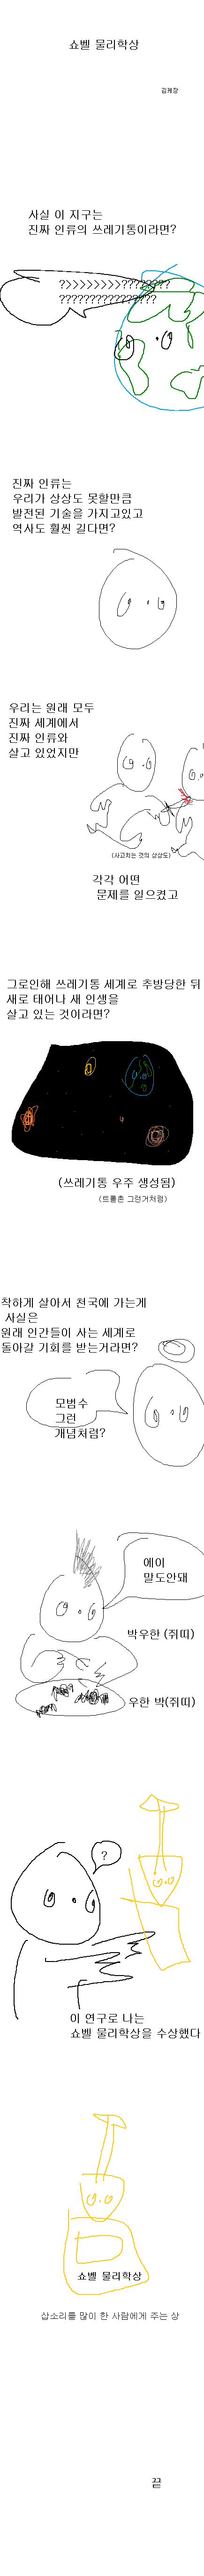 쇼벨 물리학상 - 김케장